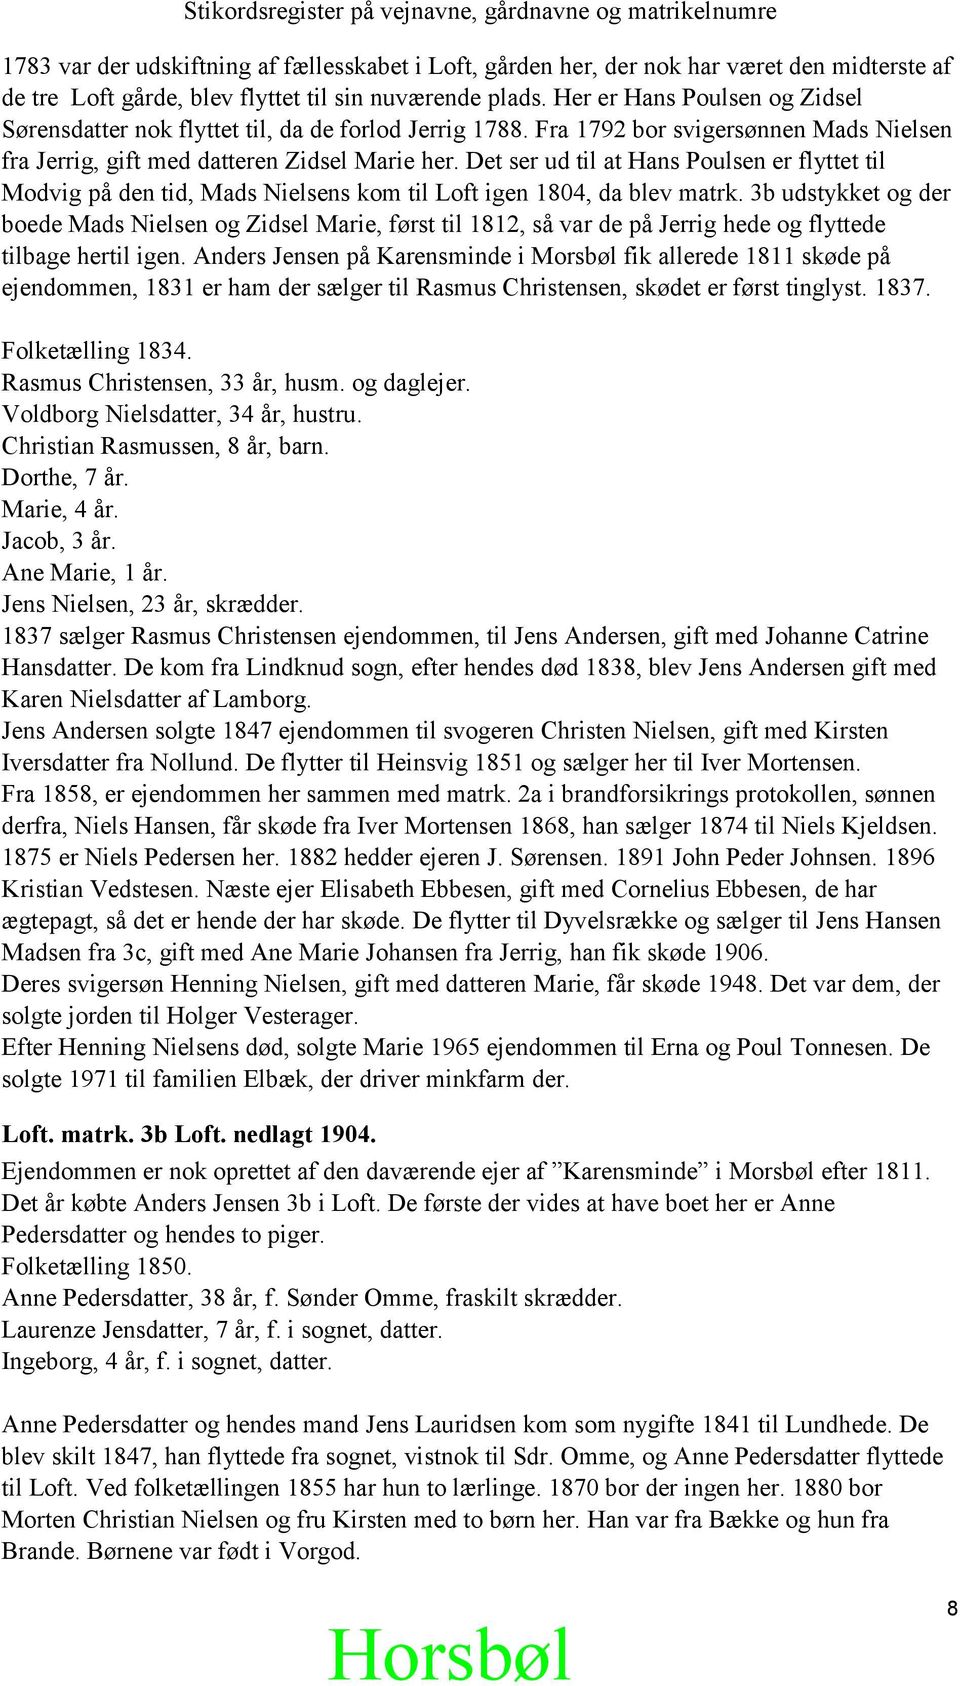 Det ser ud til at Hans Poulsen er flyttet til Modvig på den tid, Mads Nielsens kom til Loft igen 1804, da blev matrk.